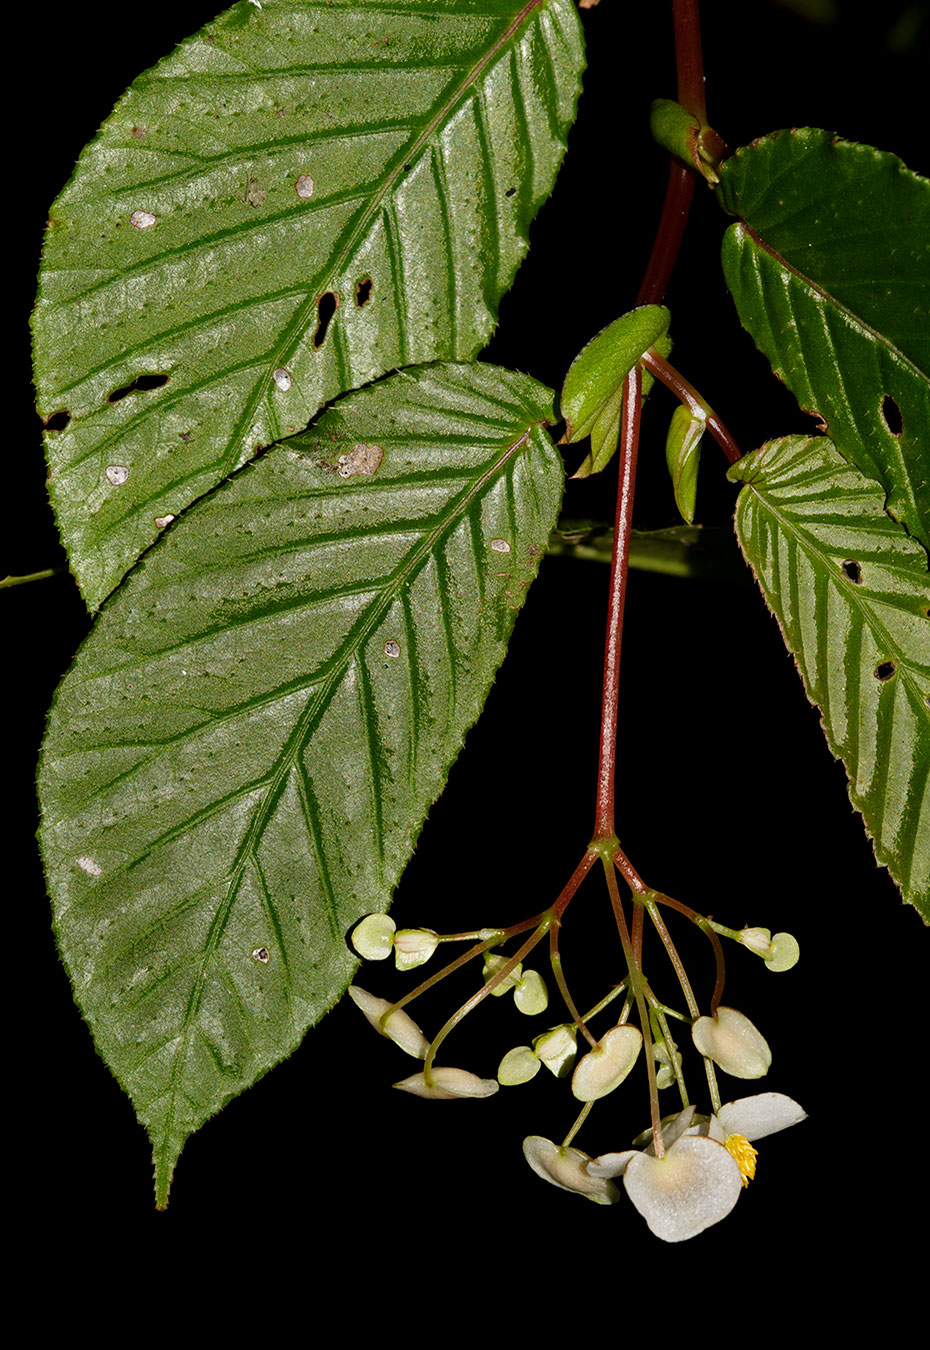 Begonia seemanniana, especie endémica de Costa Rica y Oeste de Panamá